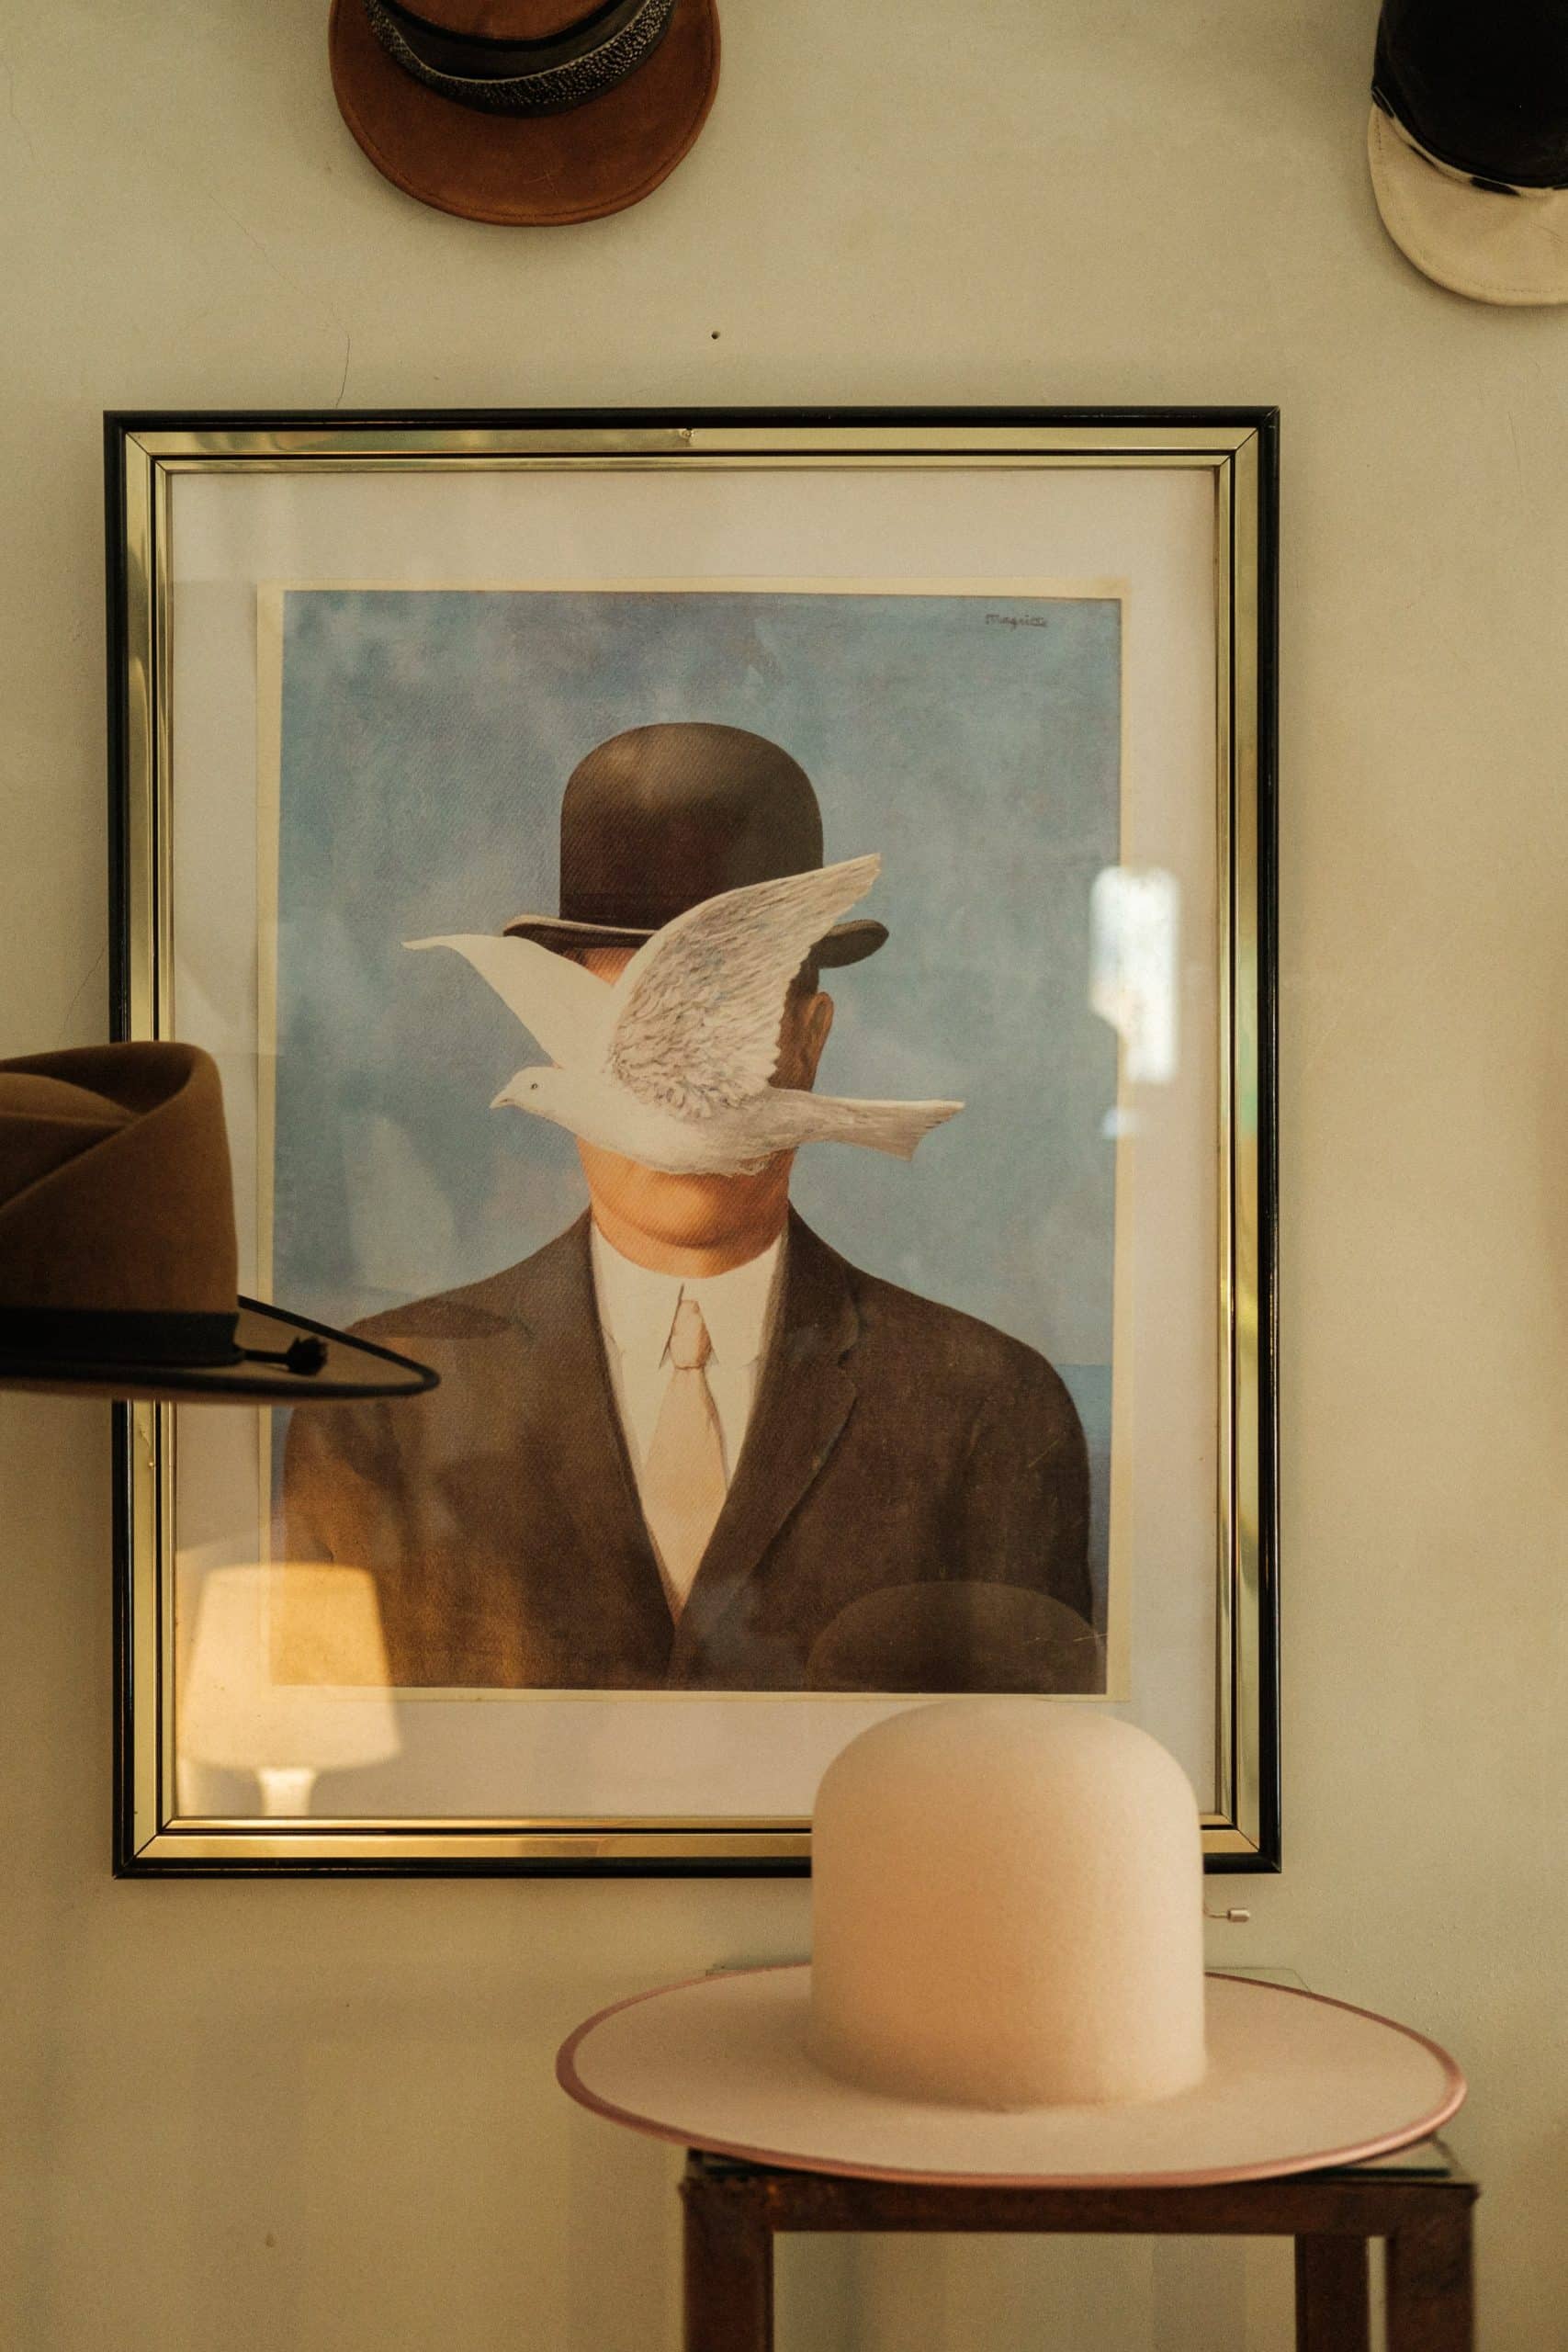 Chapéu claro pousado em cima de mesa de madeira. Quadro na parede com a imagem de um homem de chapéu com uma pomba na frente do rosto.